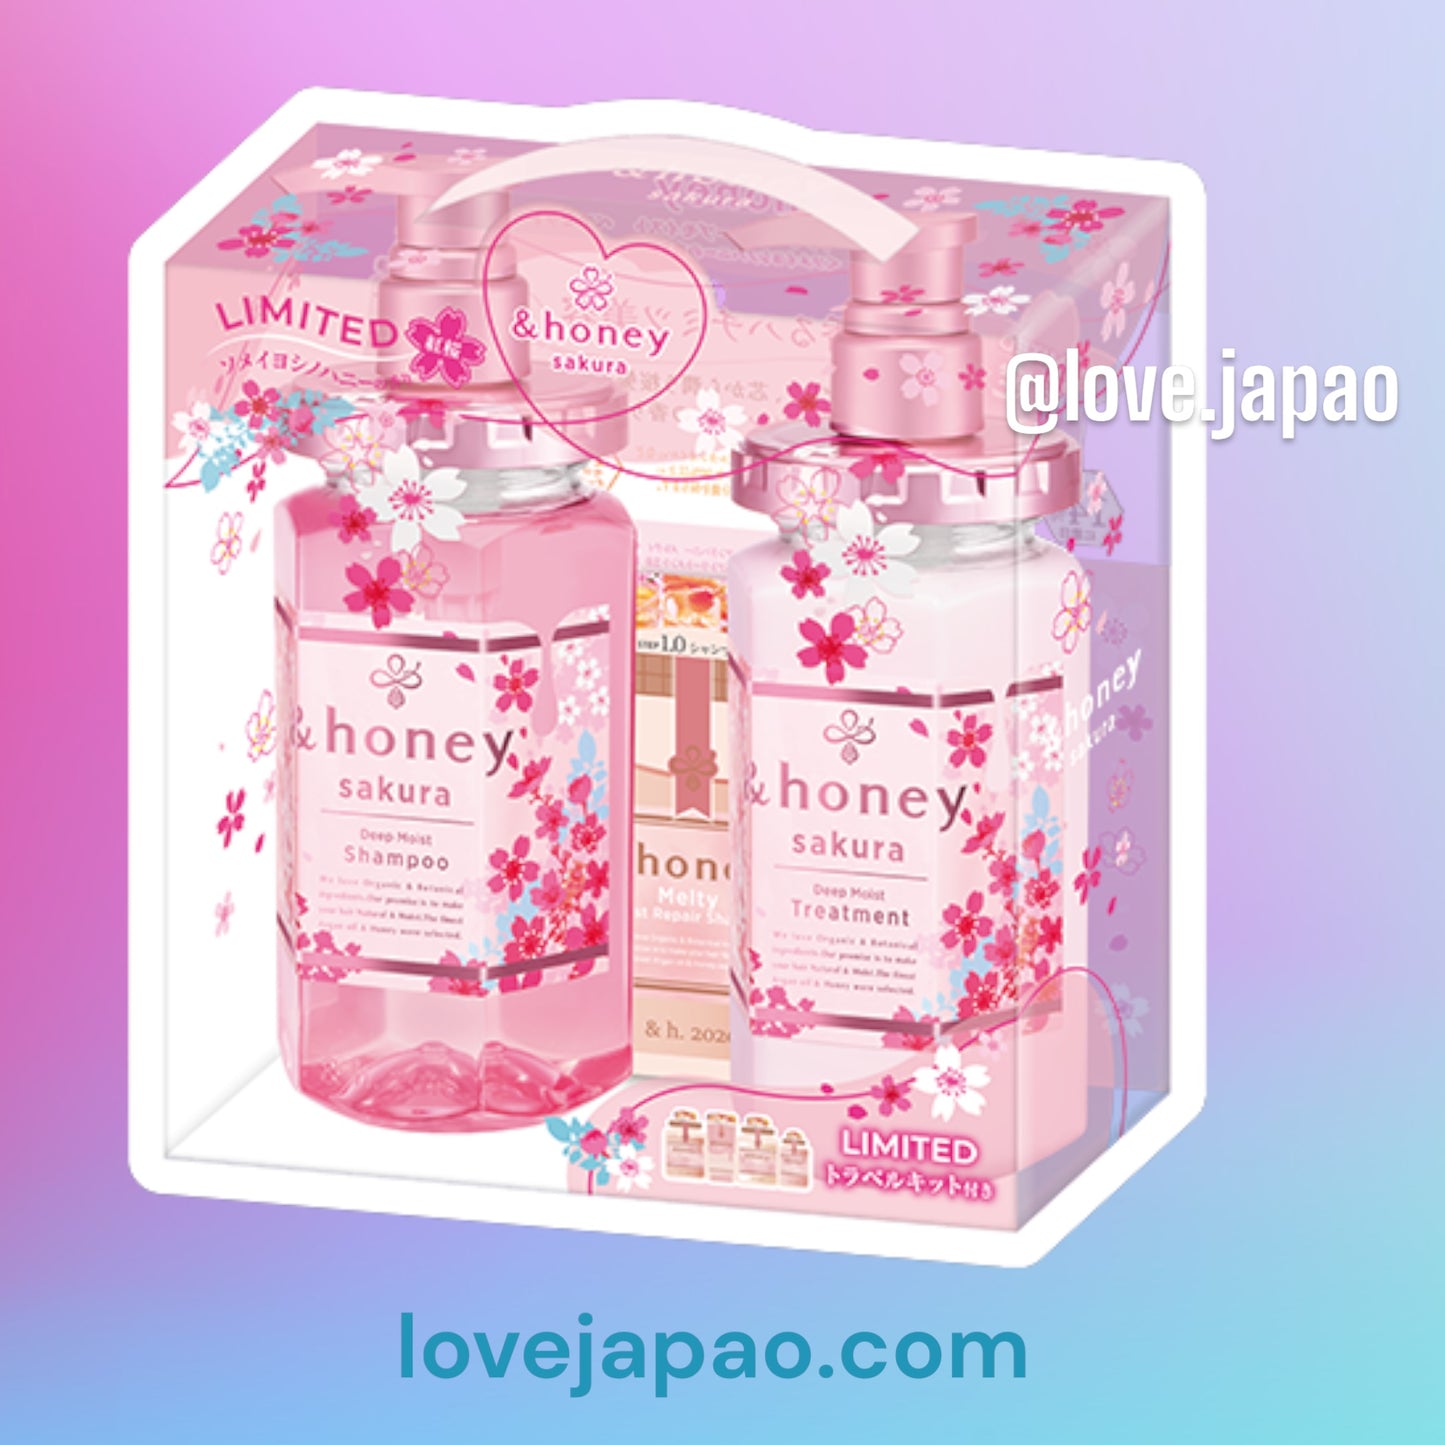 Edição limitada especial Sakura & Honey e honey ehoney shampoo condicionador cerejeira